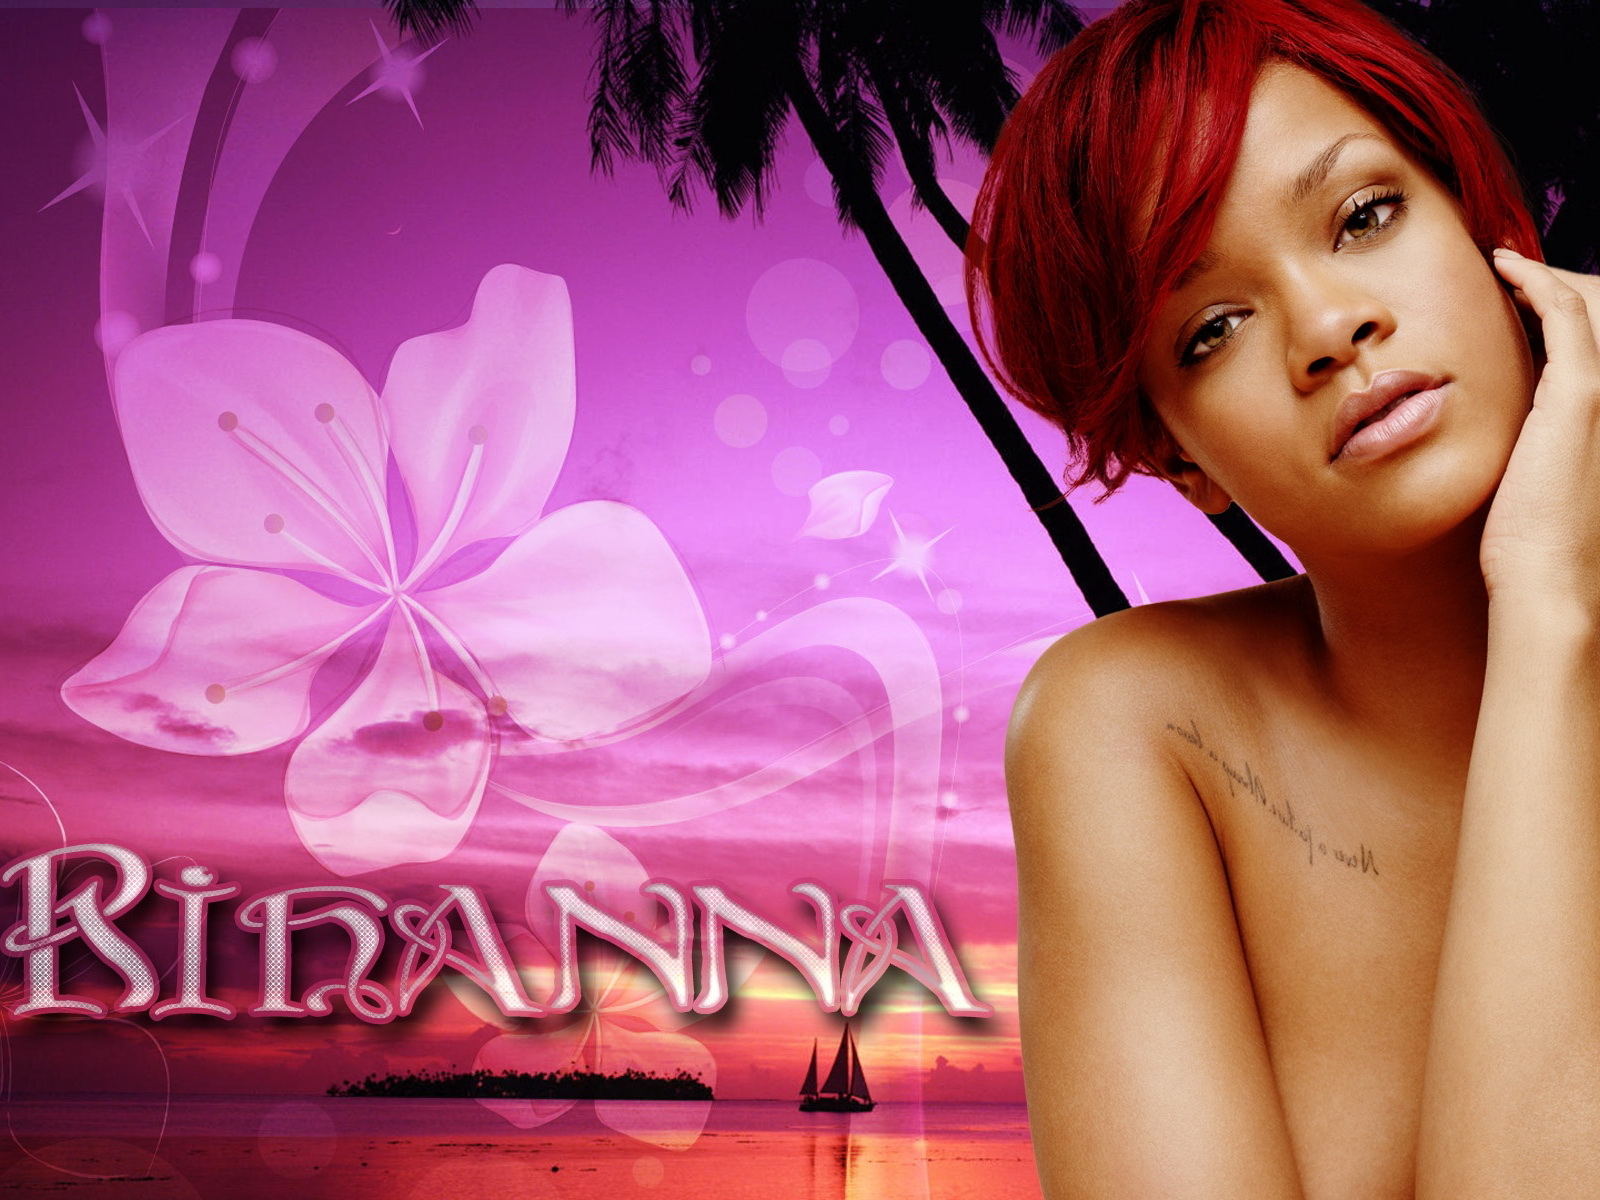 Rihanna Desktop Wallpaper